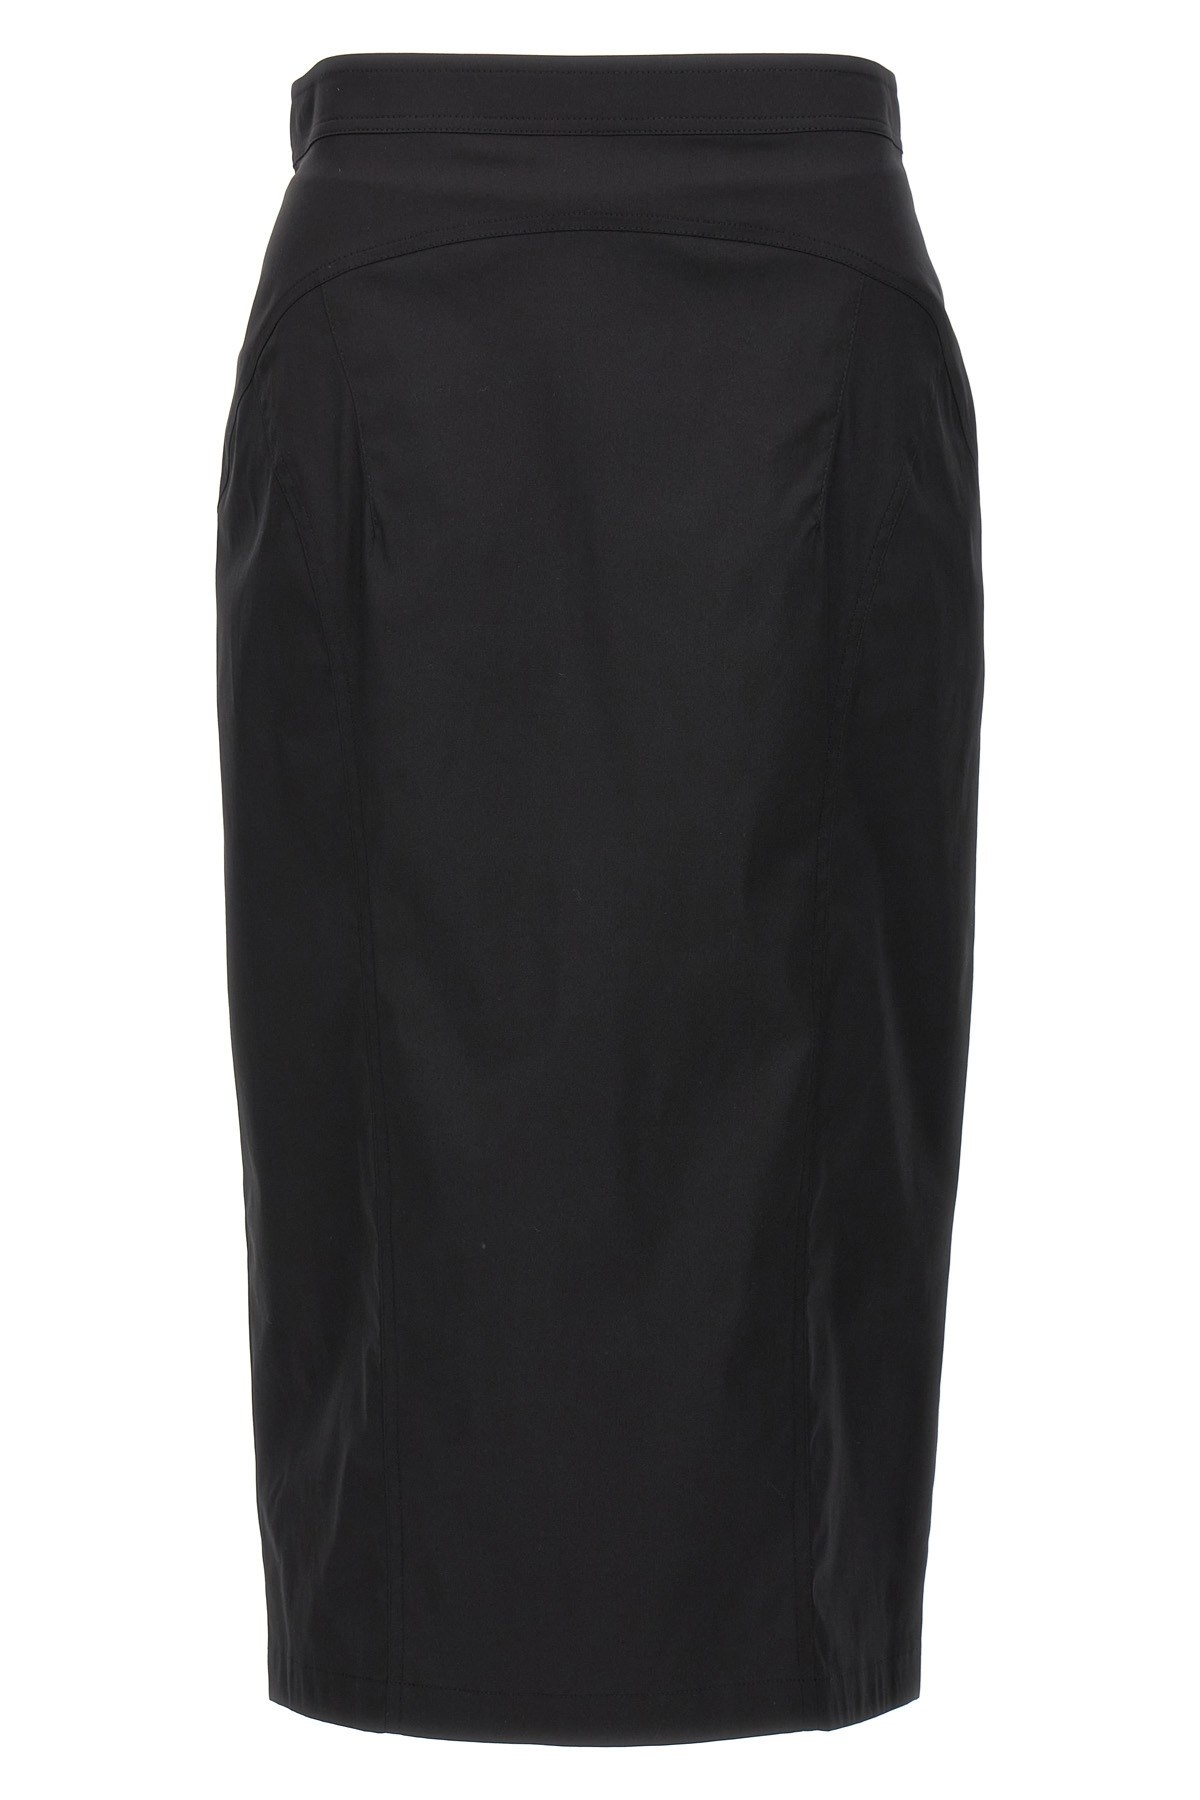 Longuette skirt - 1